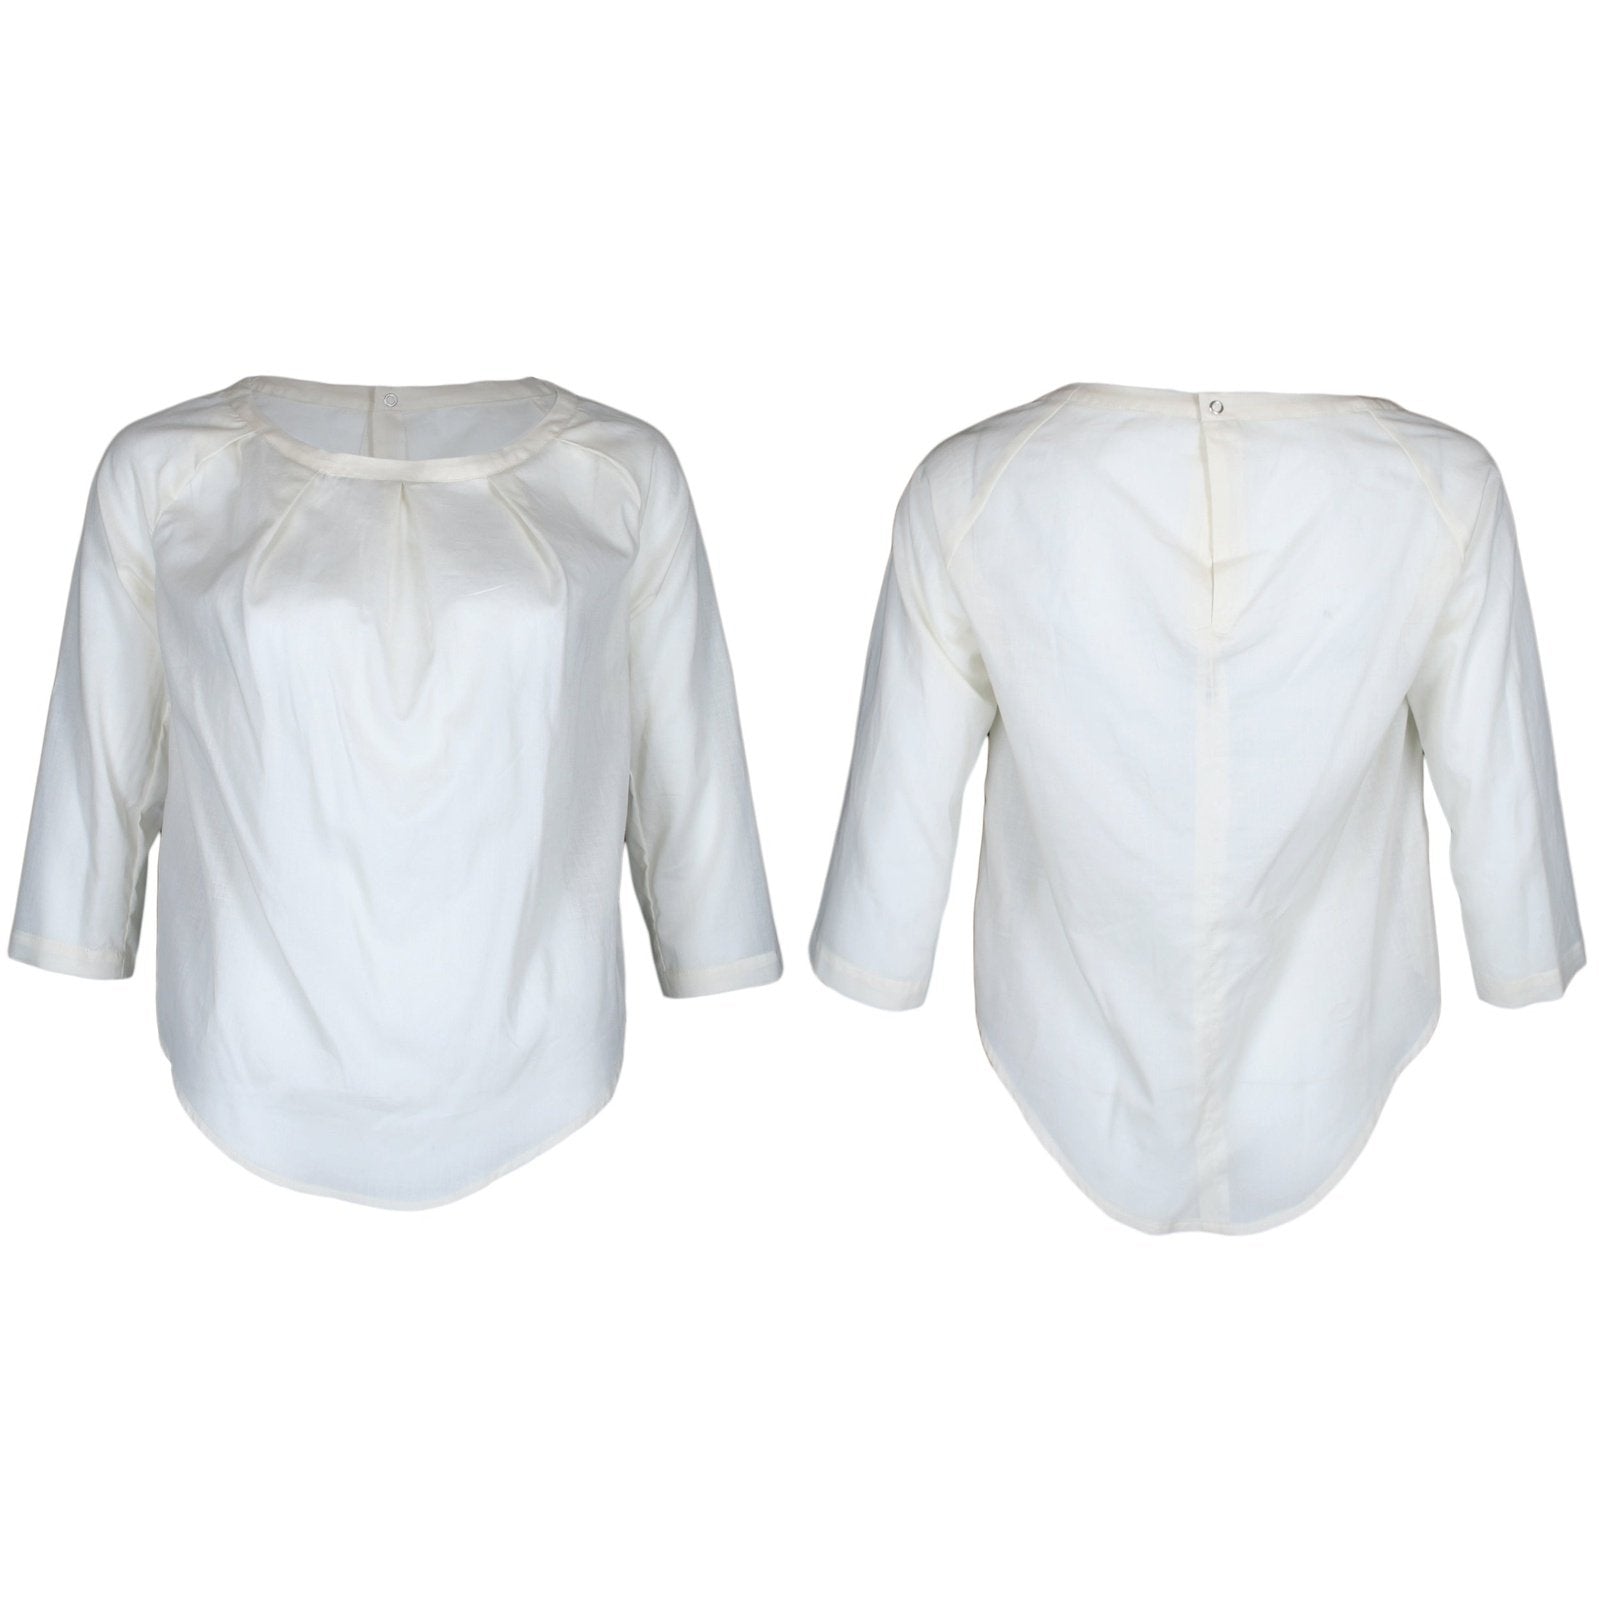 TARA blouse, plain